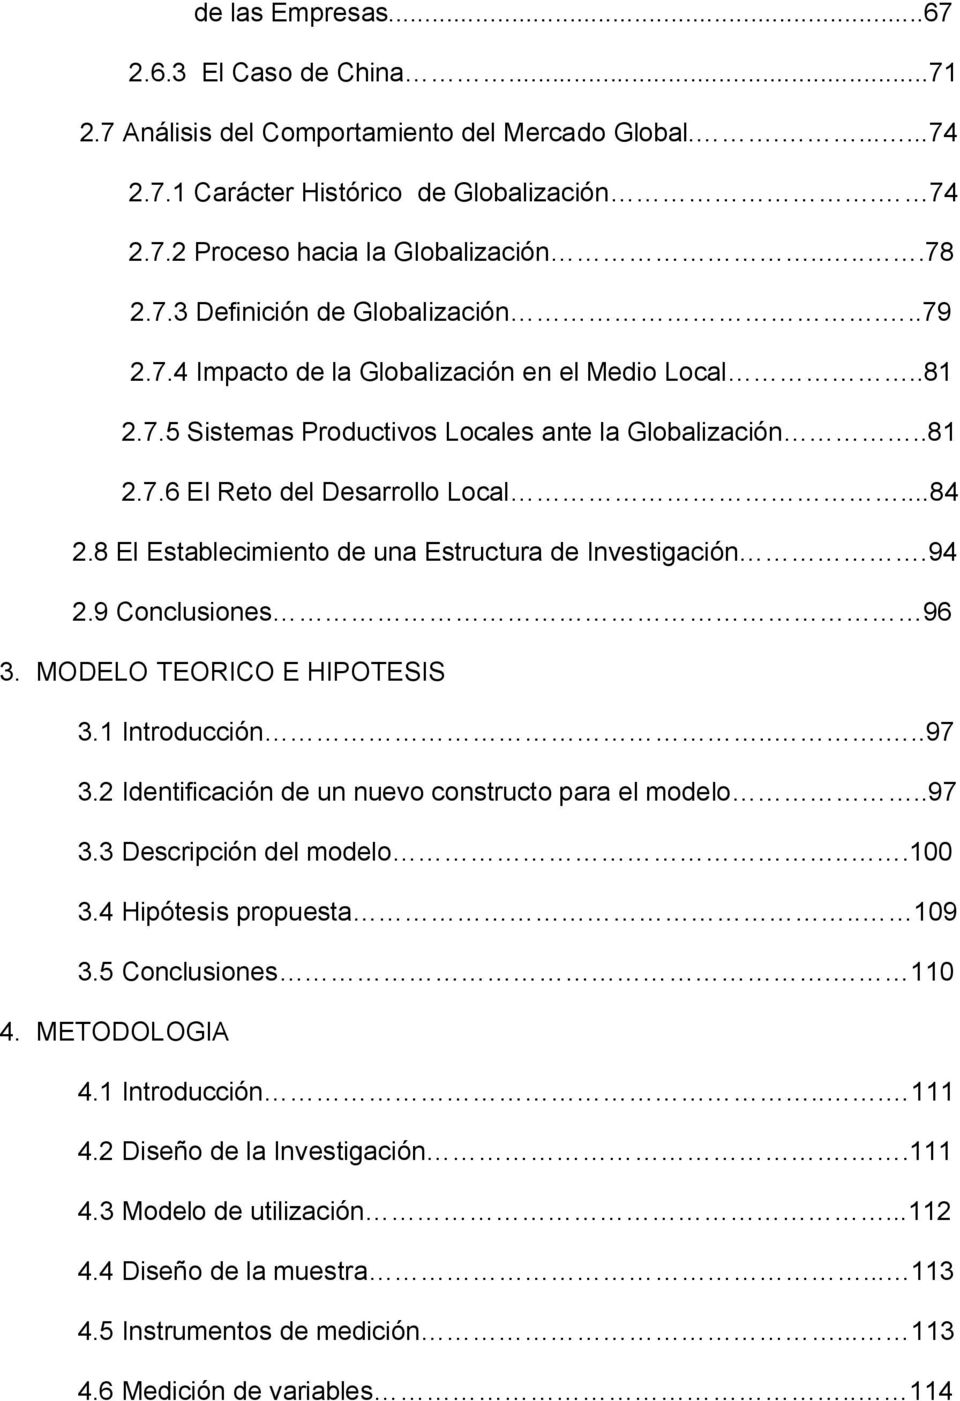 8 El Establecimiento de una Estructura de Investigación.94 2.9 Conclusiones 96 3. MODELO TEORICO E HIPOTESIS 3.1 Introducción.....97 3.2 Identificación de un nuevo constructo para el modelo..97 3.3 Descripción del modelo.